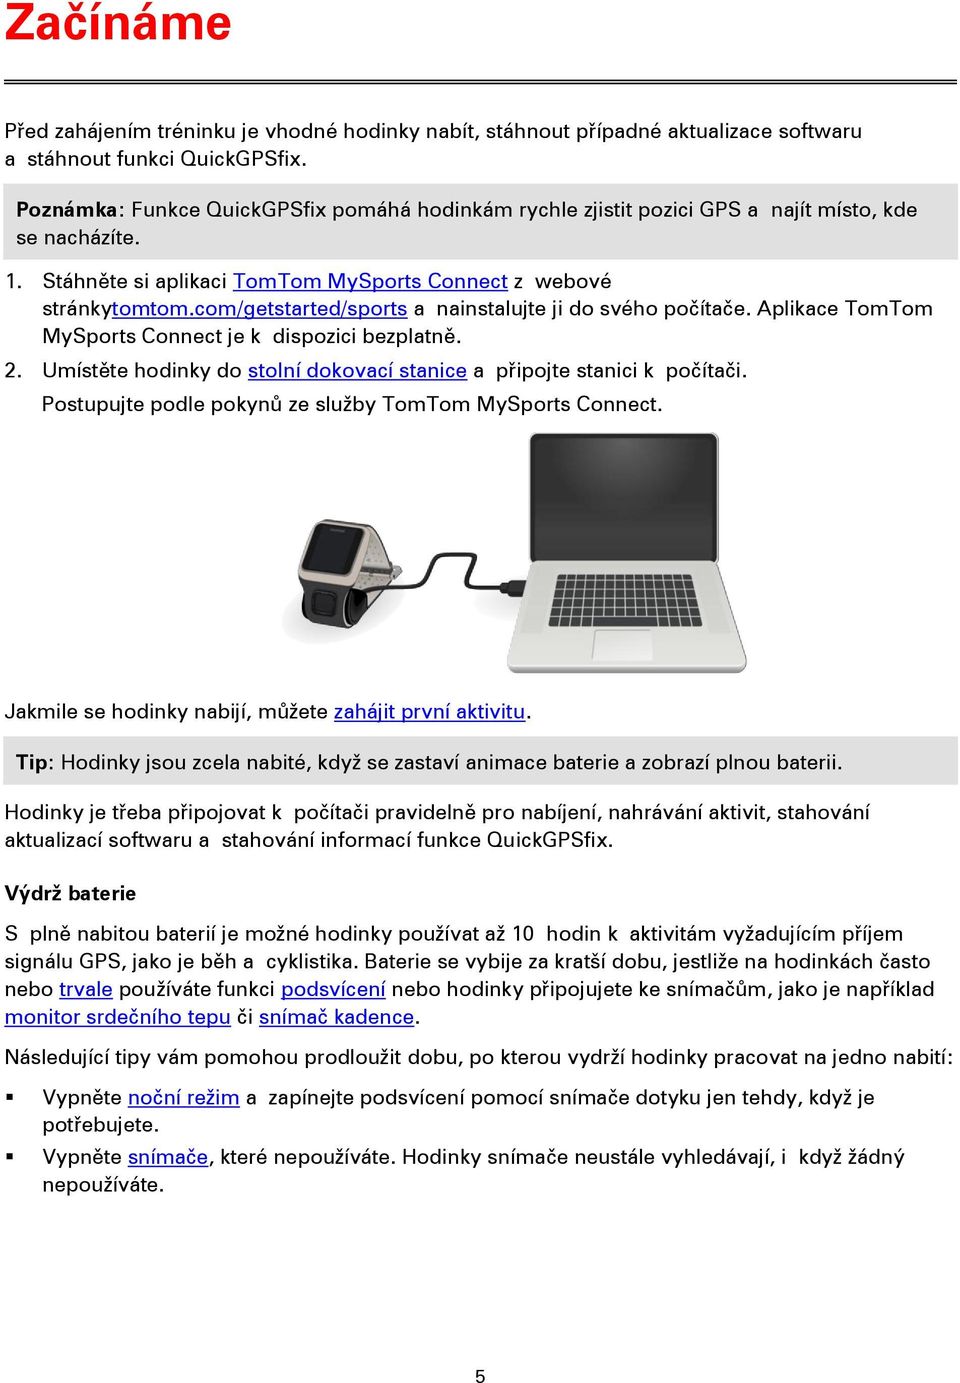 TomTom Runner & Multi-Sport Referenční příručka PDF Free Download